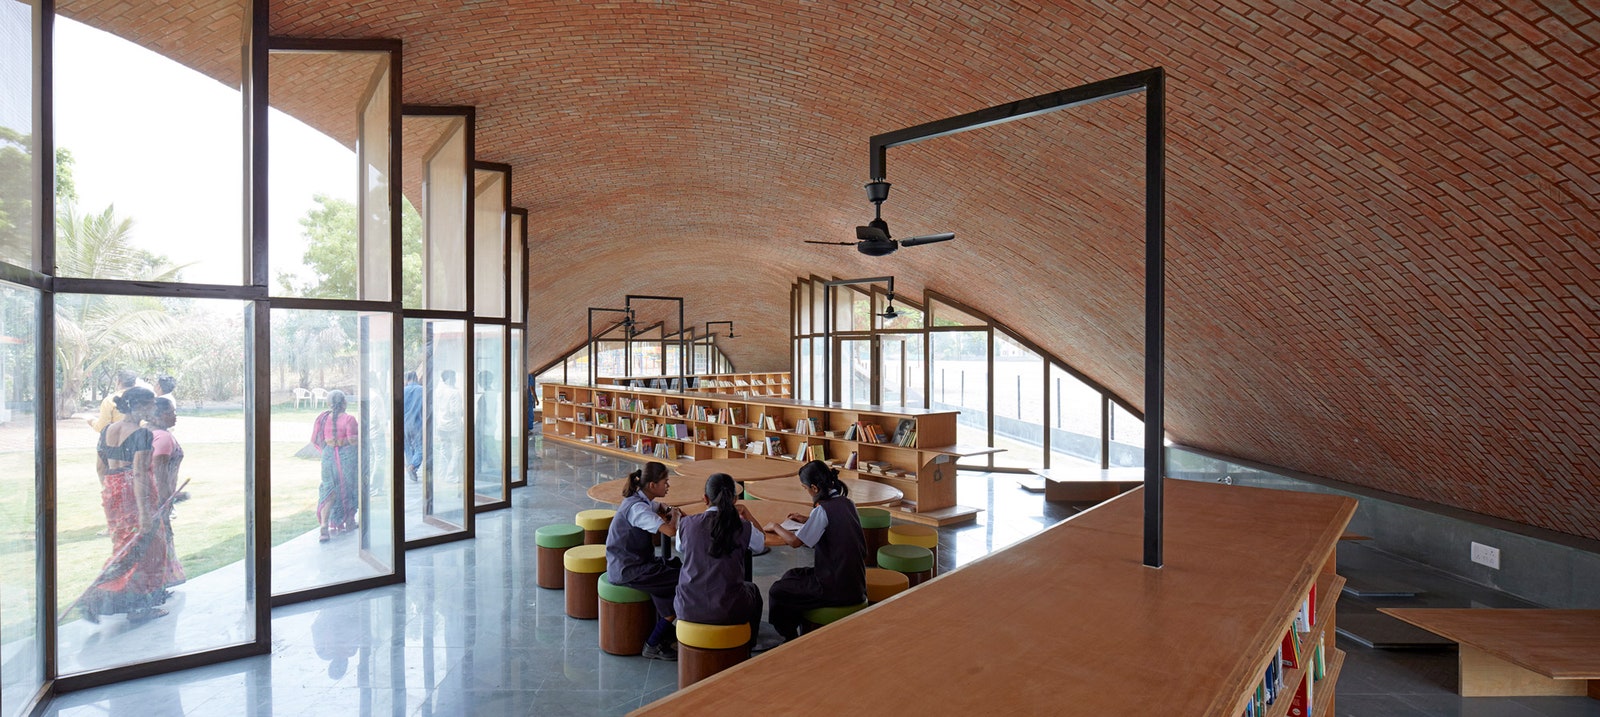 Современная архитектура необычная школьная библиотека в Индии